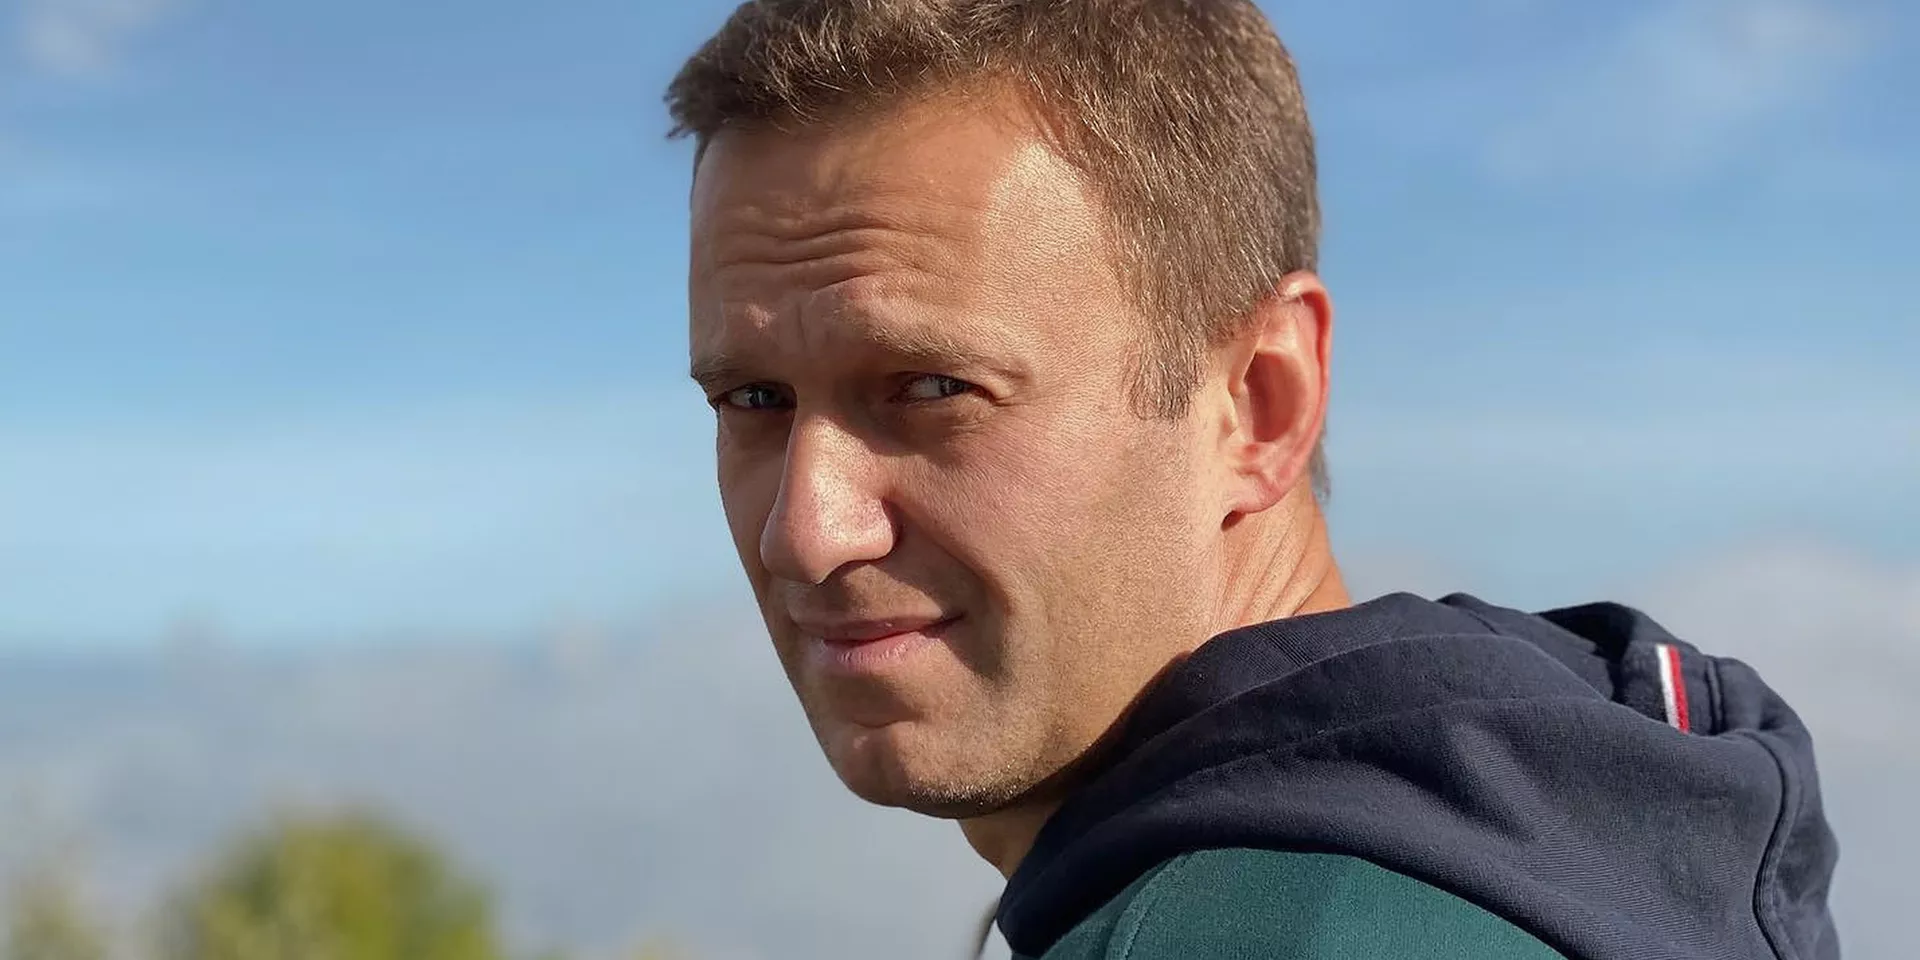 Кто устроил охоту на Навального